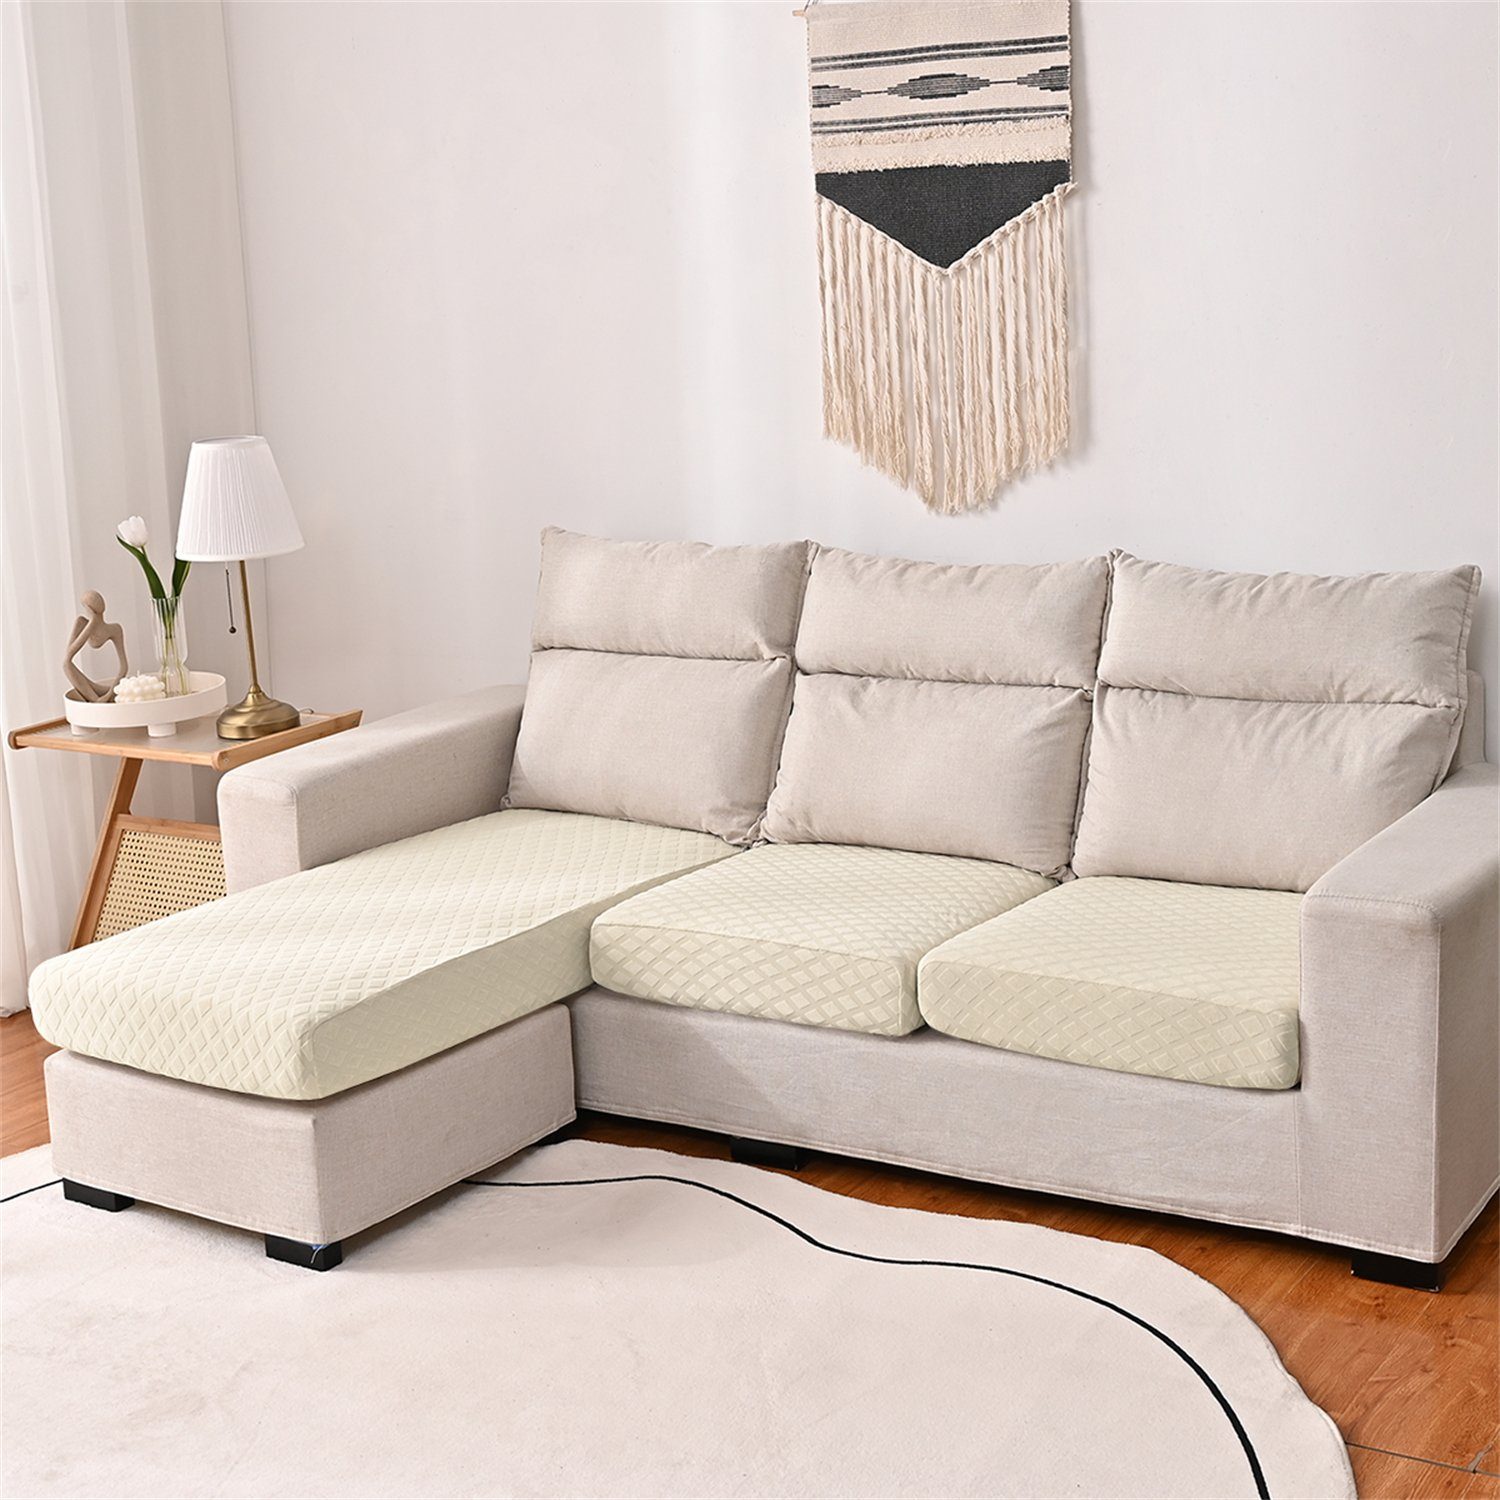 Sofahusse, HOMEIDEAS, wasserfest elastischer Beige Sofa-Sitzbezug mit 3DMuster